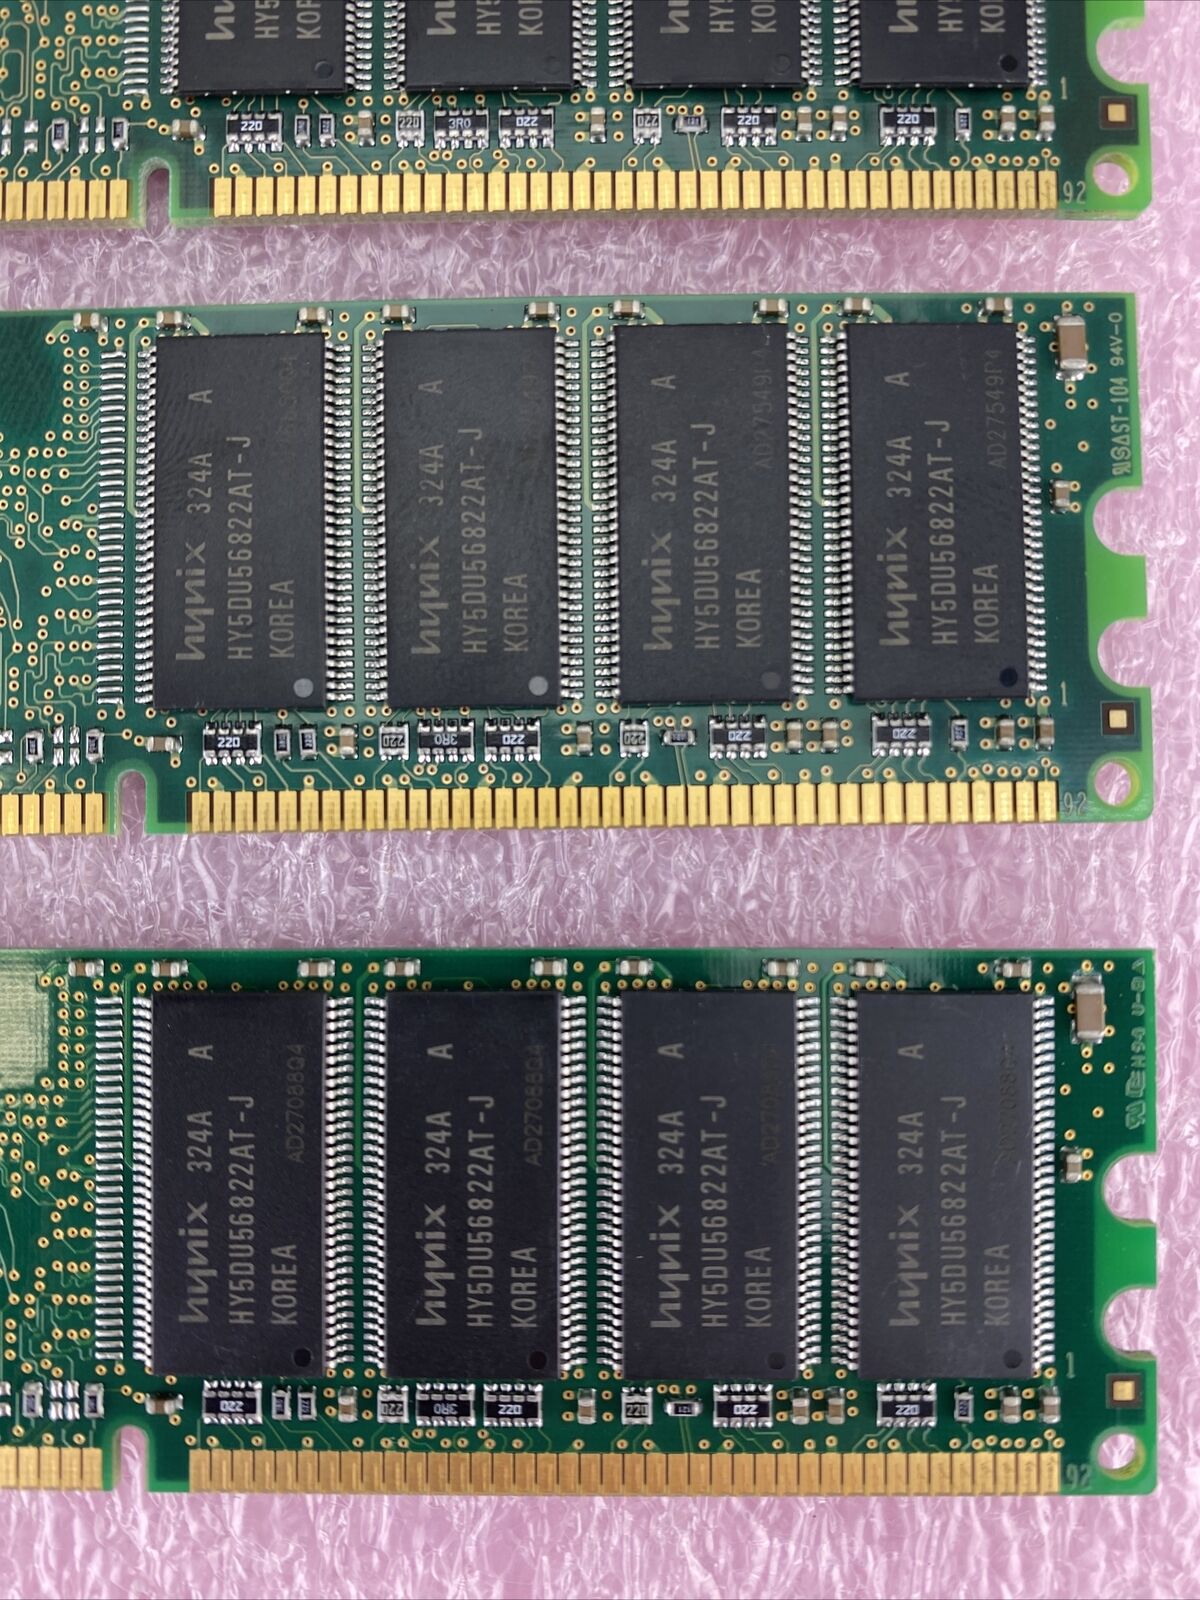 4x 512MB Hynix HYMD264646A8J-J DDR PC2700U-25330 333MHz CL2.5 184pin 2.5V NonECC